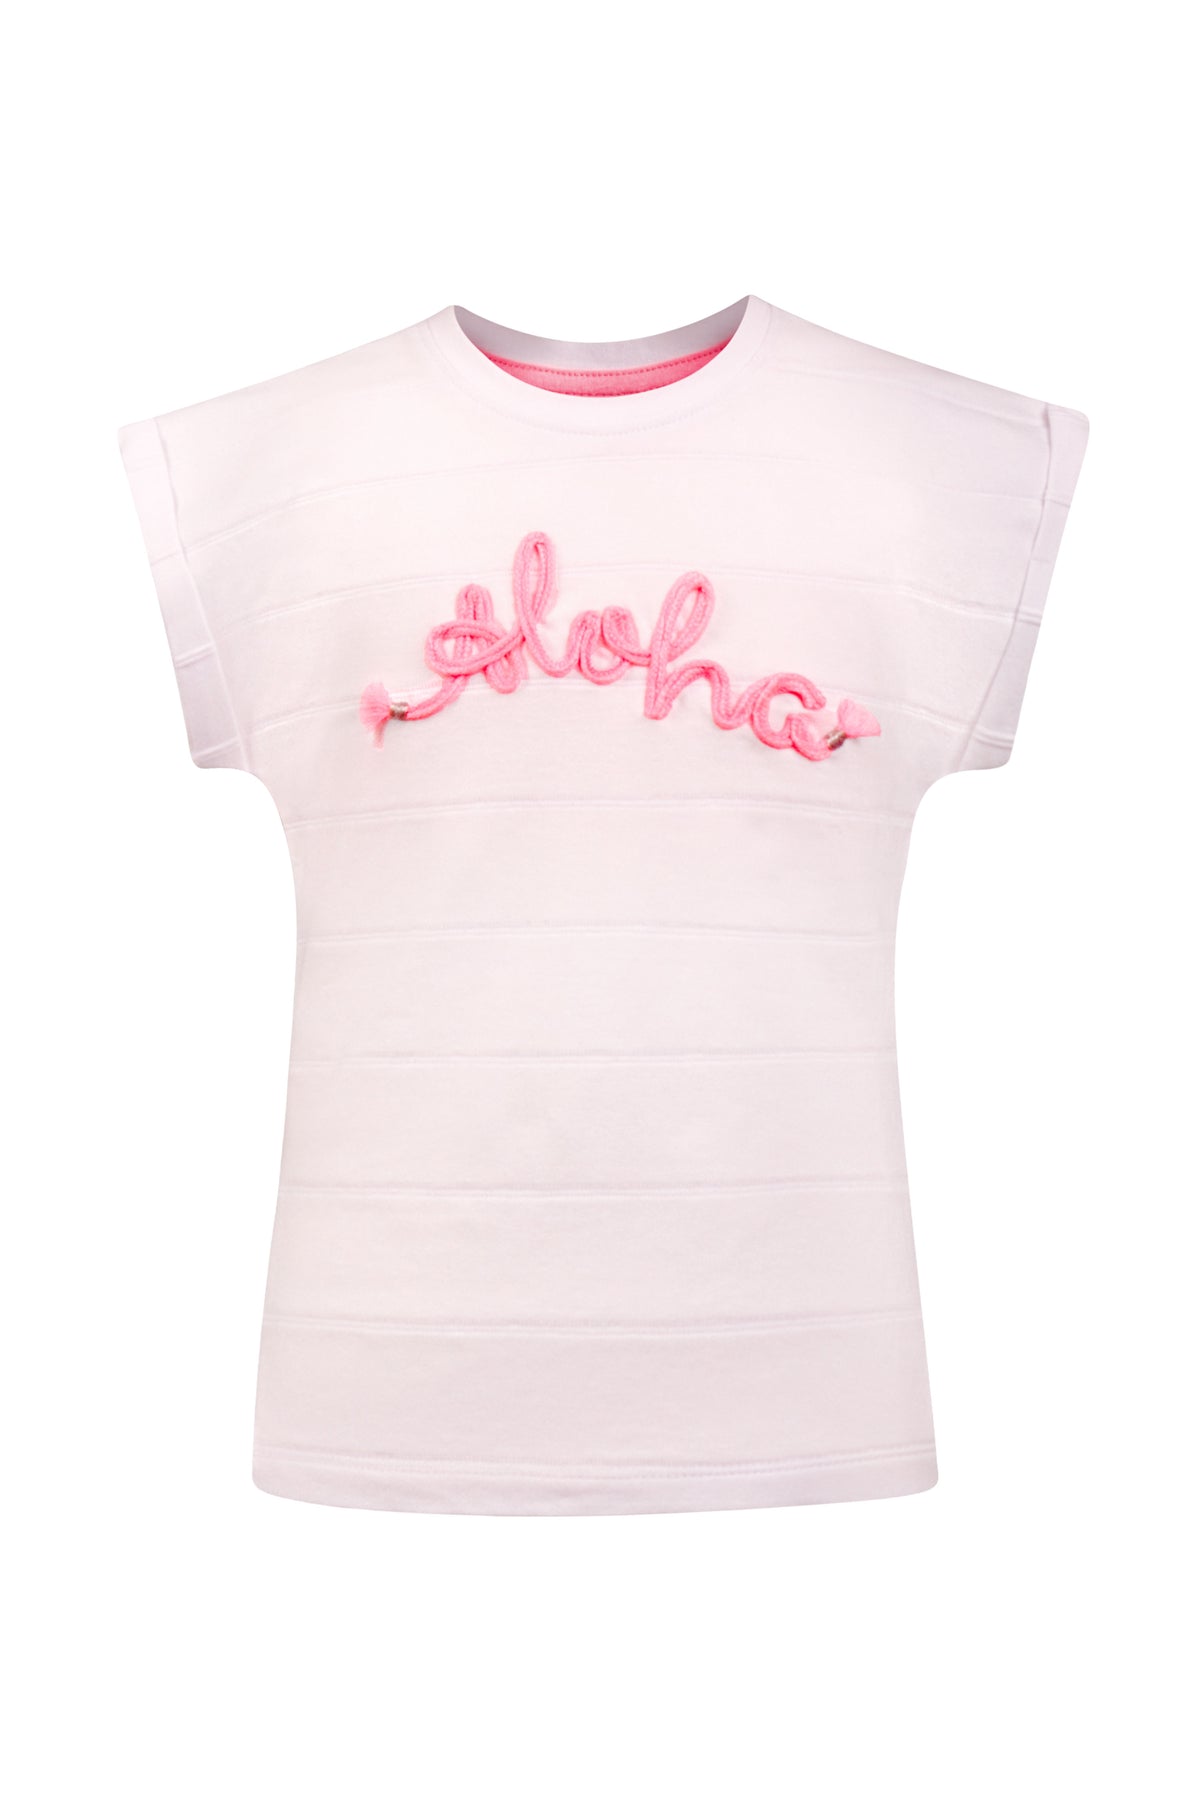 T-Shirt Aloha von Happy Girls